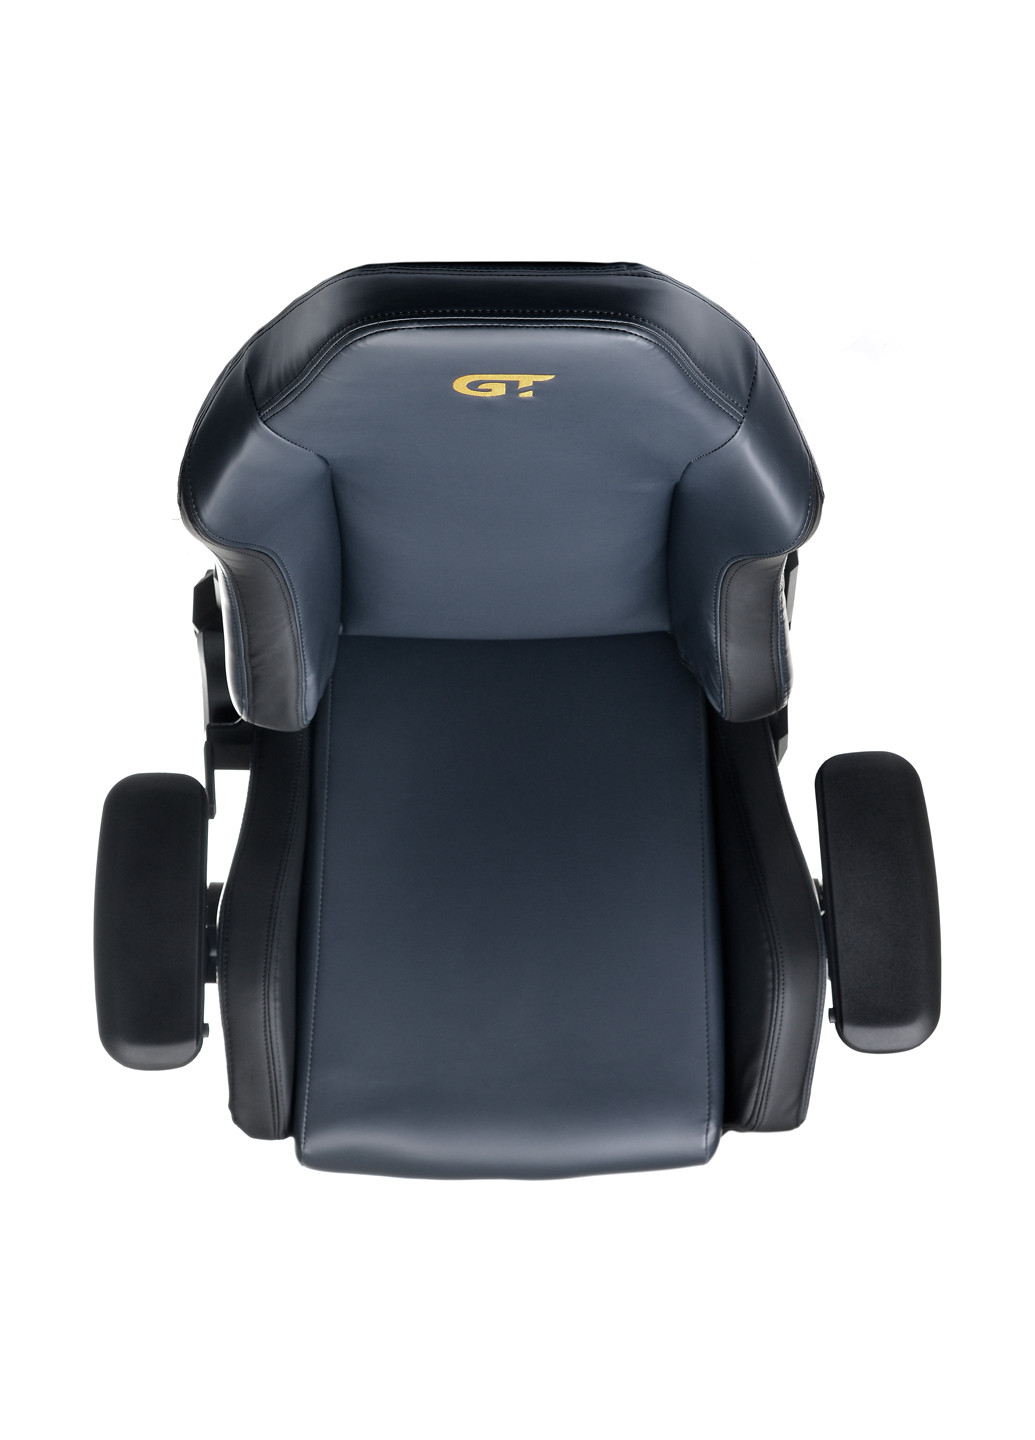 Геймерське крісло X-2610 Ash / Black GT Racer x-2610 ash/black (177294956)